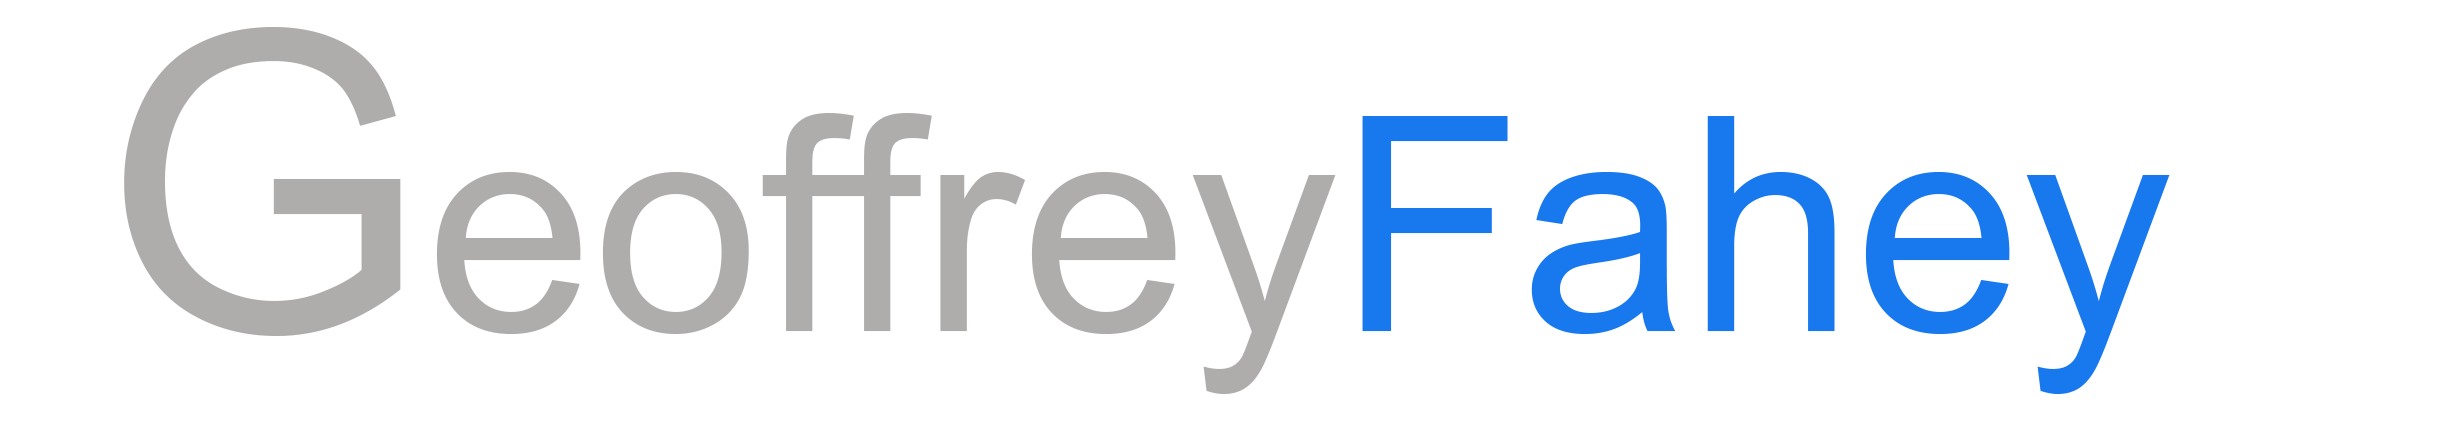 Geoffrey Fahey Logo